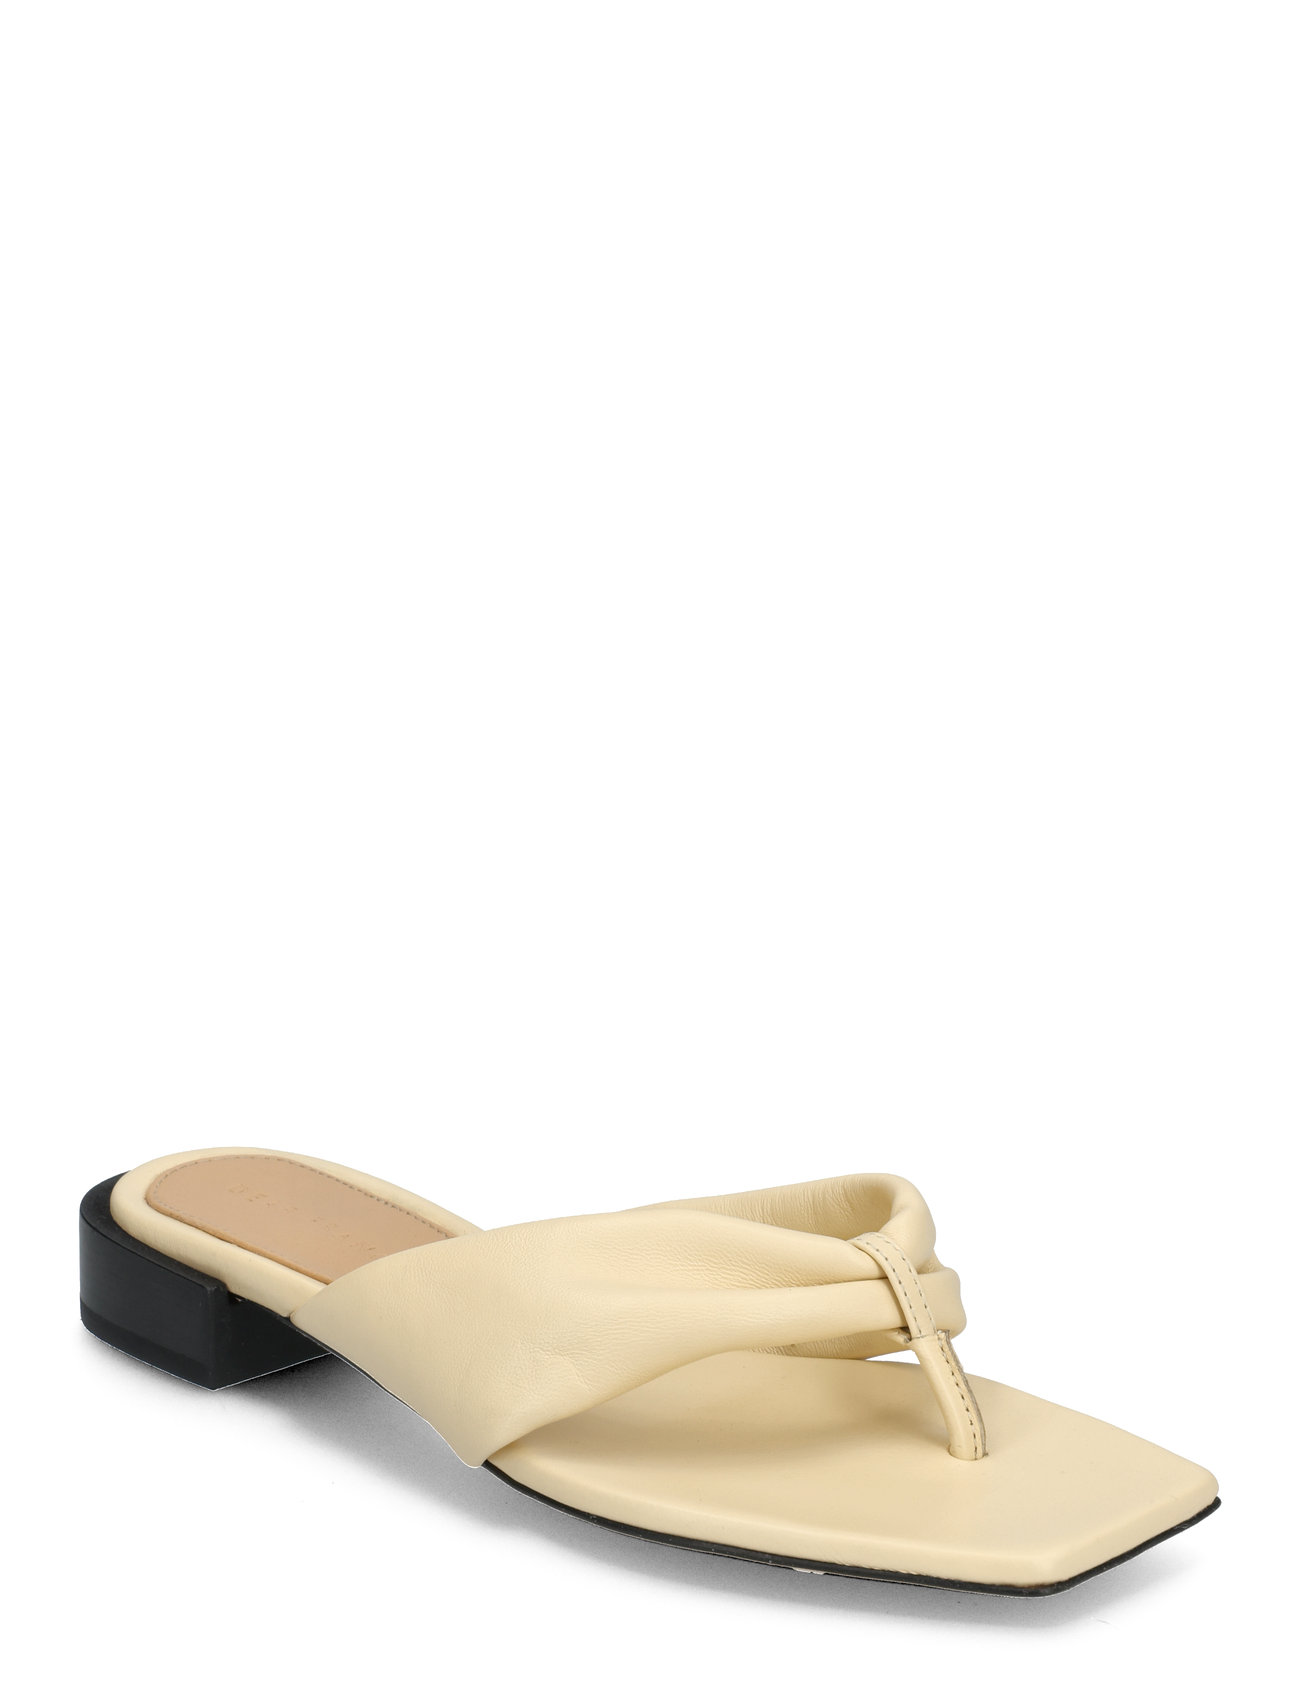 Wrap Sandal Designers Sandals Flat Cream DEAR FRANCES